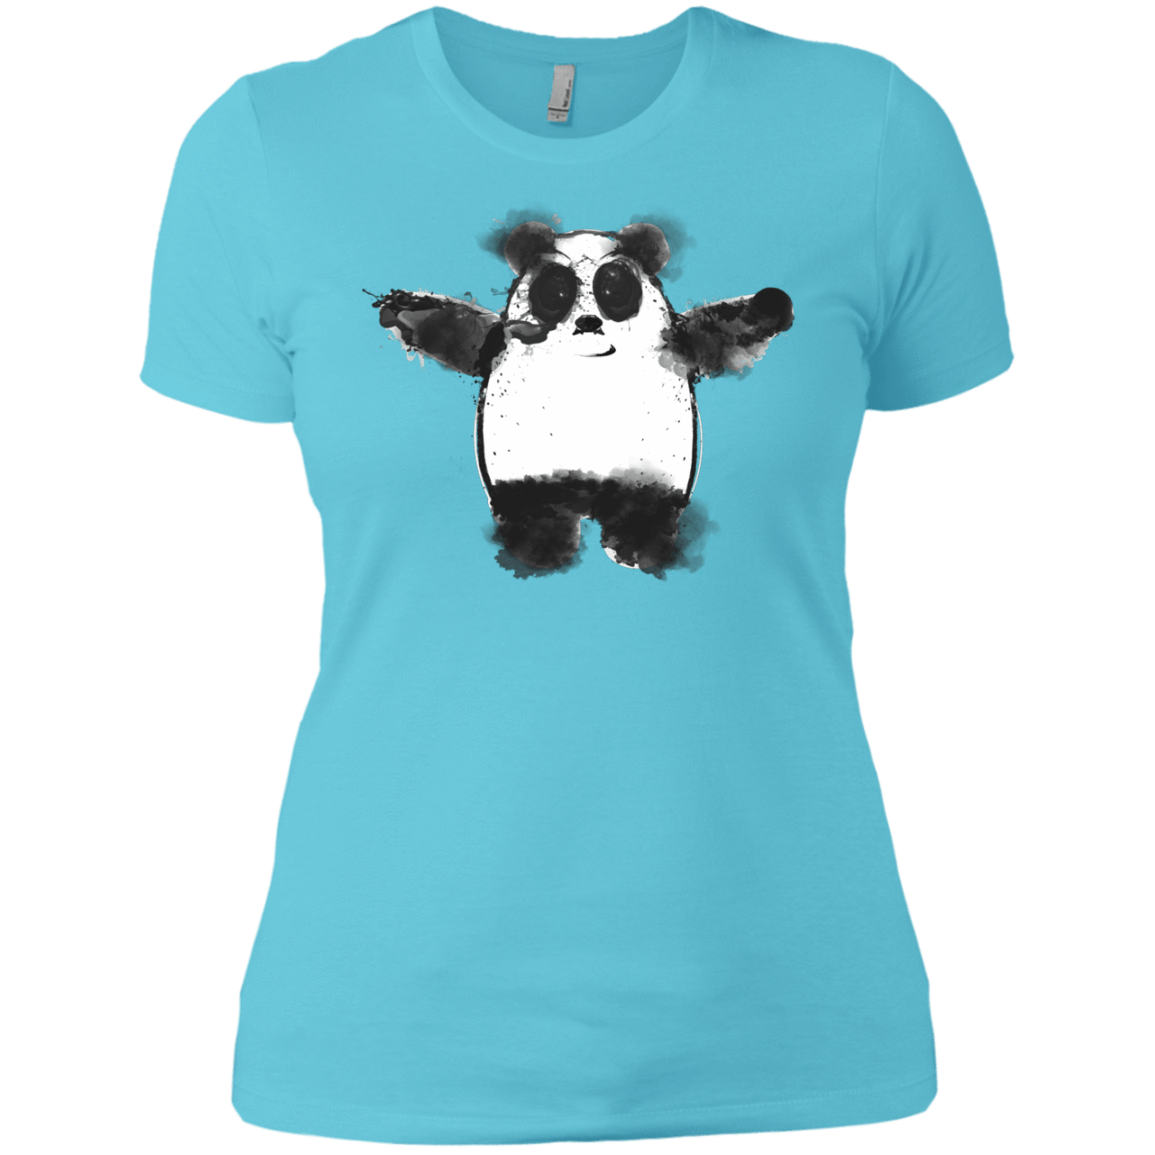 T-Shirts Cancun / X-Small Panda Ink Women's Premium T-Shirt